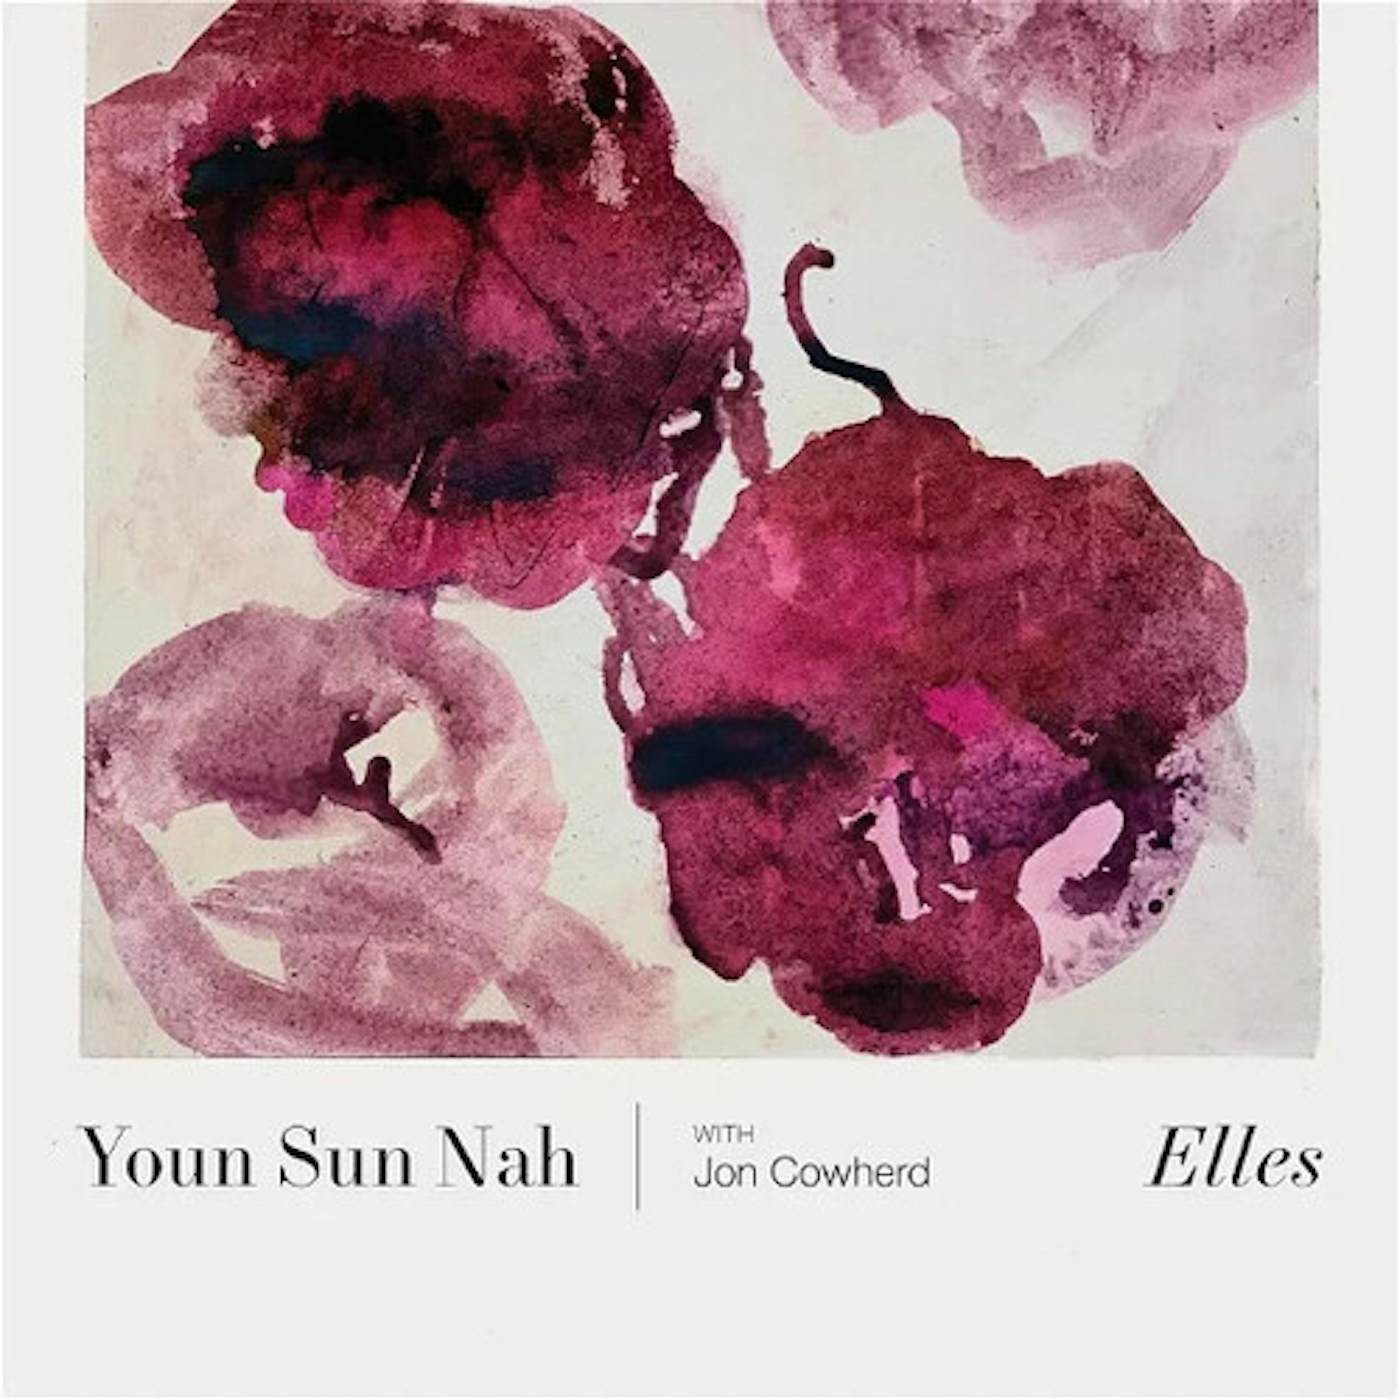 Youn Sun Nah ELLES CD